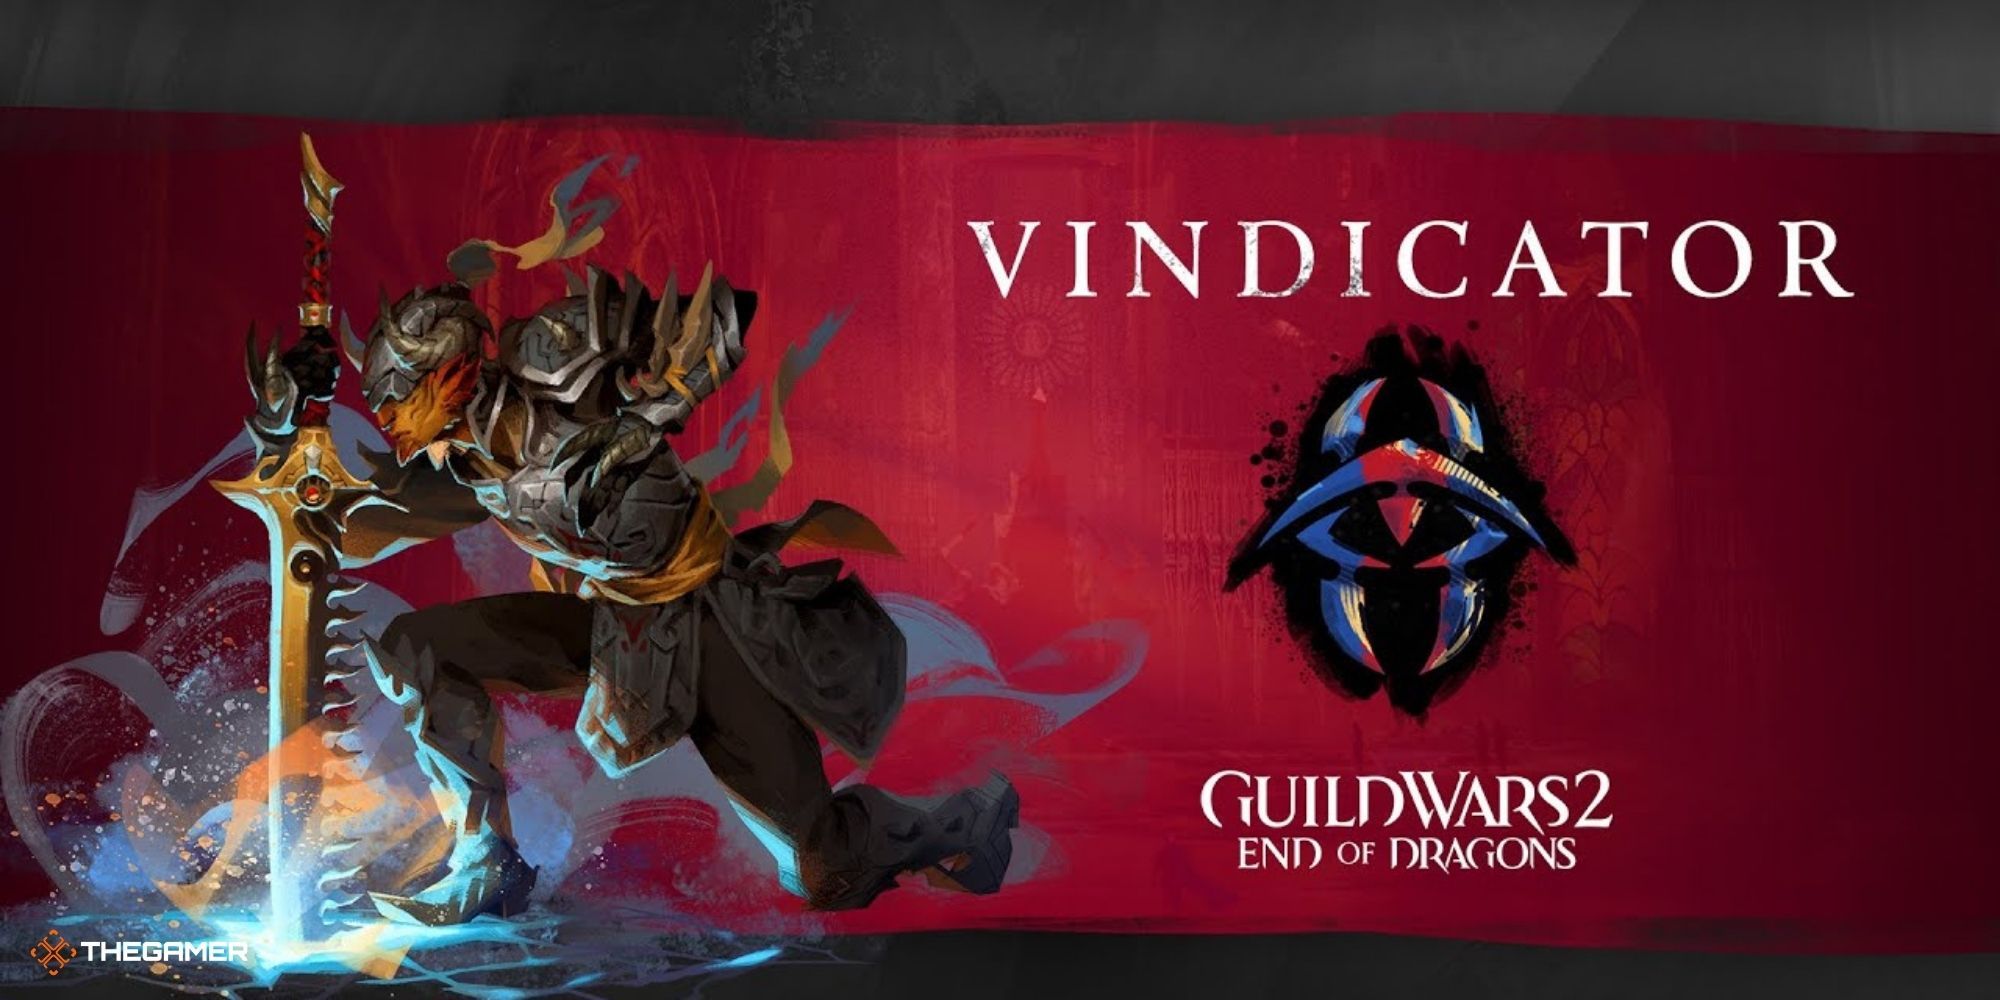 Guild Wars 2 End of Dragons - Vindicator Specialization art